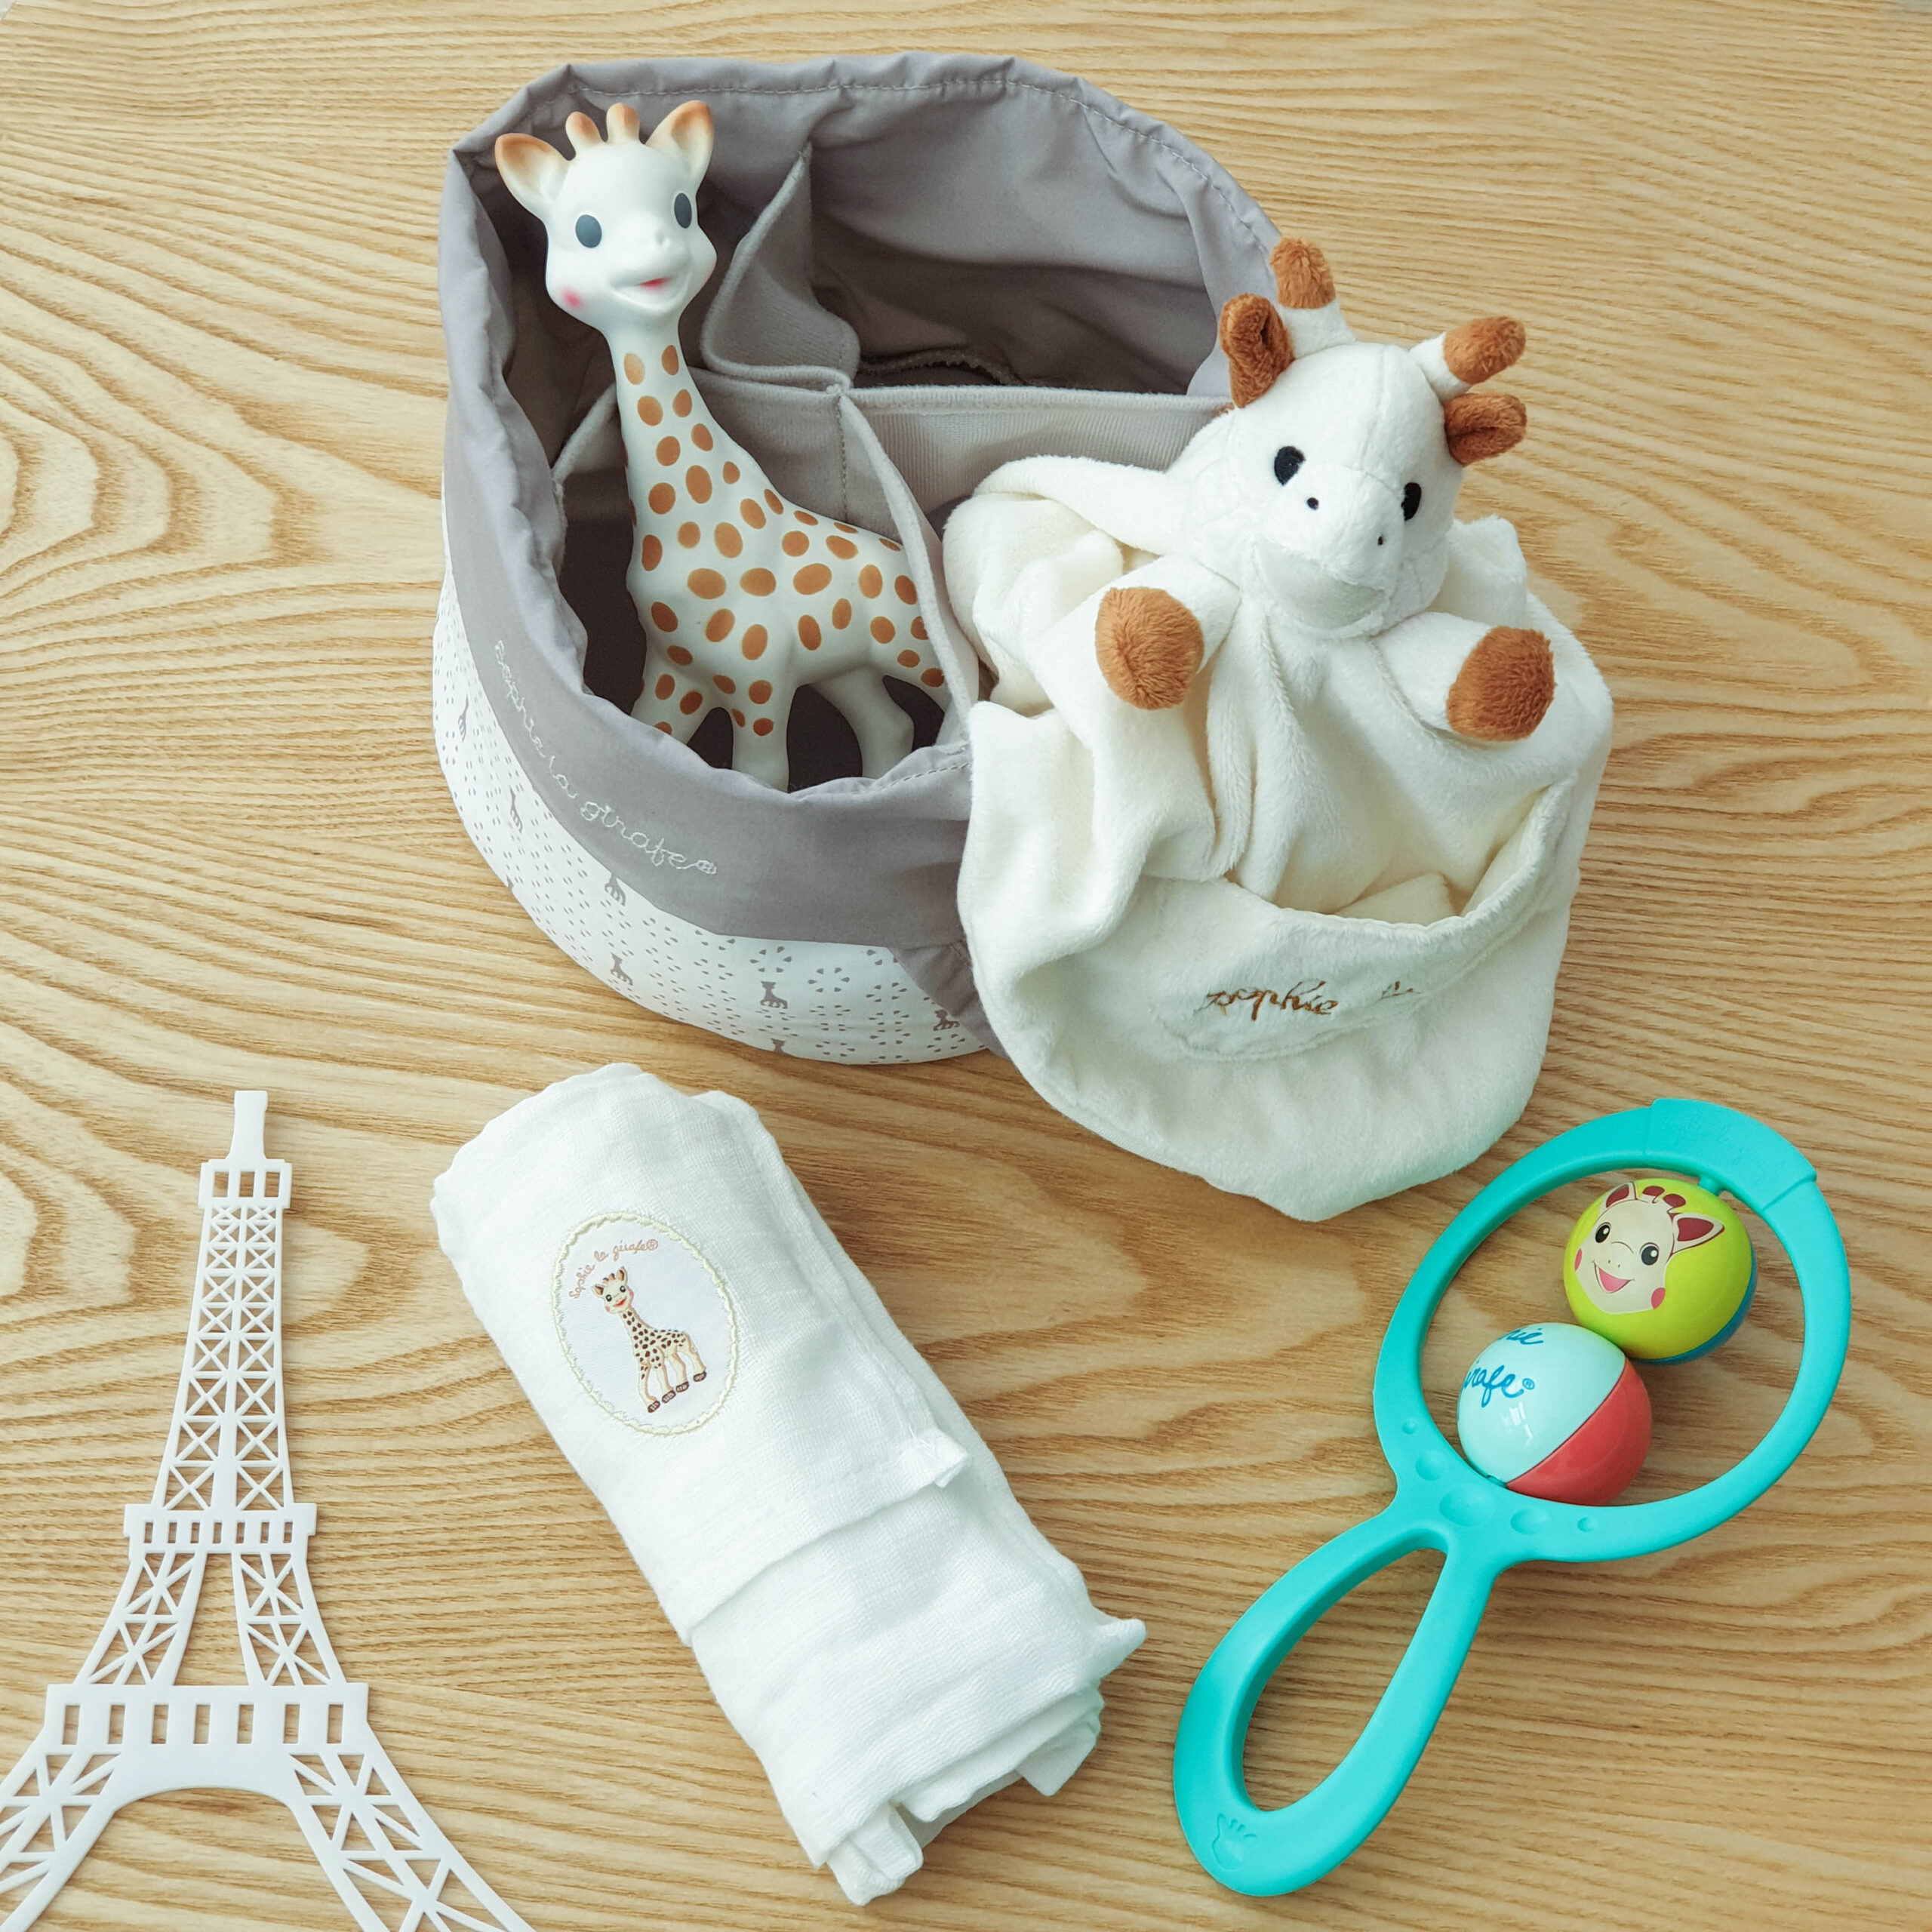 Coffret naissance Sophie'doux couverture bébé et Sophie la girafe